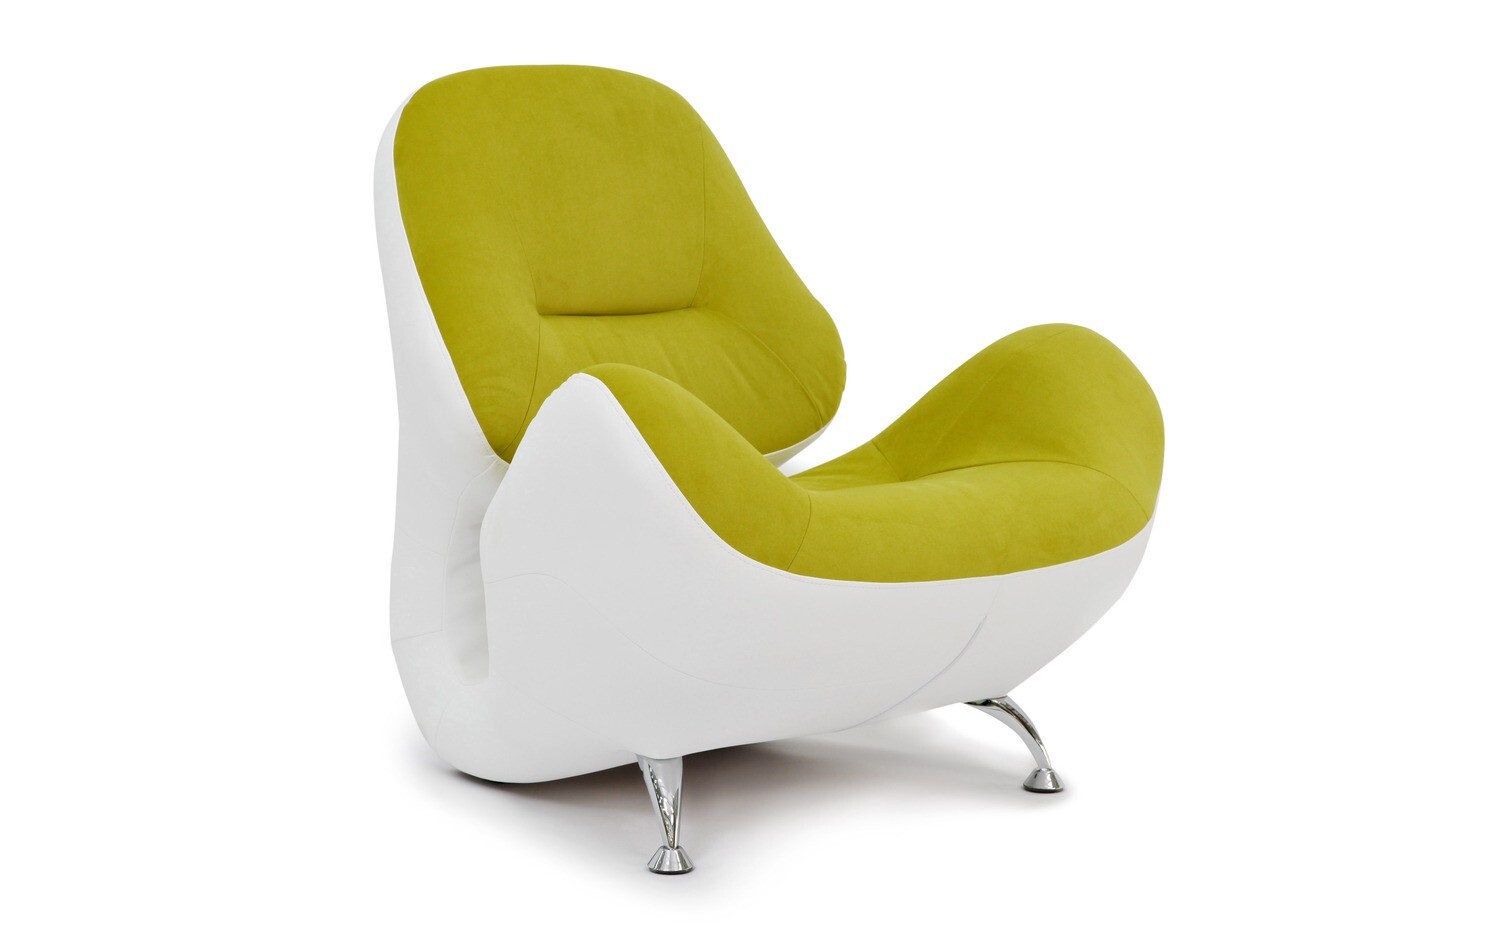 Элитное дизайнерское кресло New York, Разновидности: Оливково-жёлтое